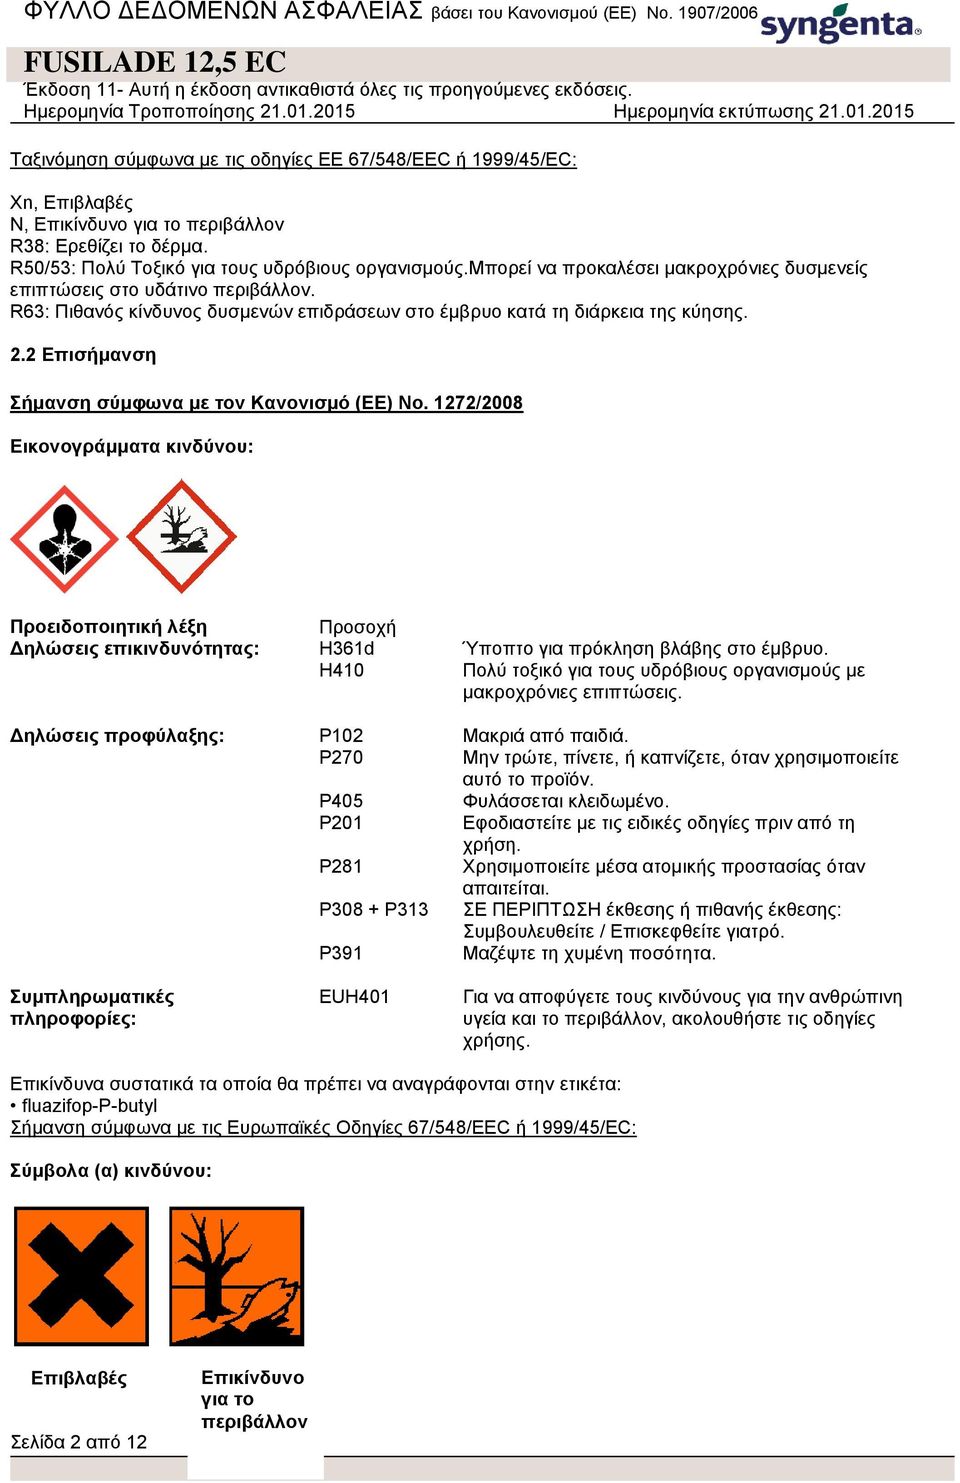 2 Επισήμανση Σήμανση σύμφωνα με τον Κανονισμό (ΕΕ) No. 1272/2008 Εικονογράμματα κινδύνου: Προειδοποιητική λέξη Προσοχή Δηλώσεις επικινδυνότητας: H361d Ύποπτο για πρόκληση βλάβης στο έμβρυο.